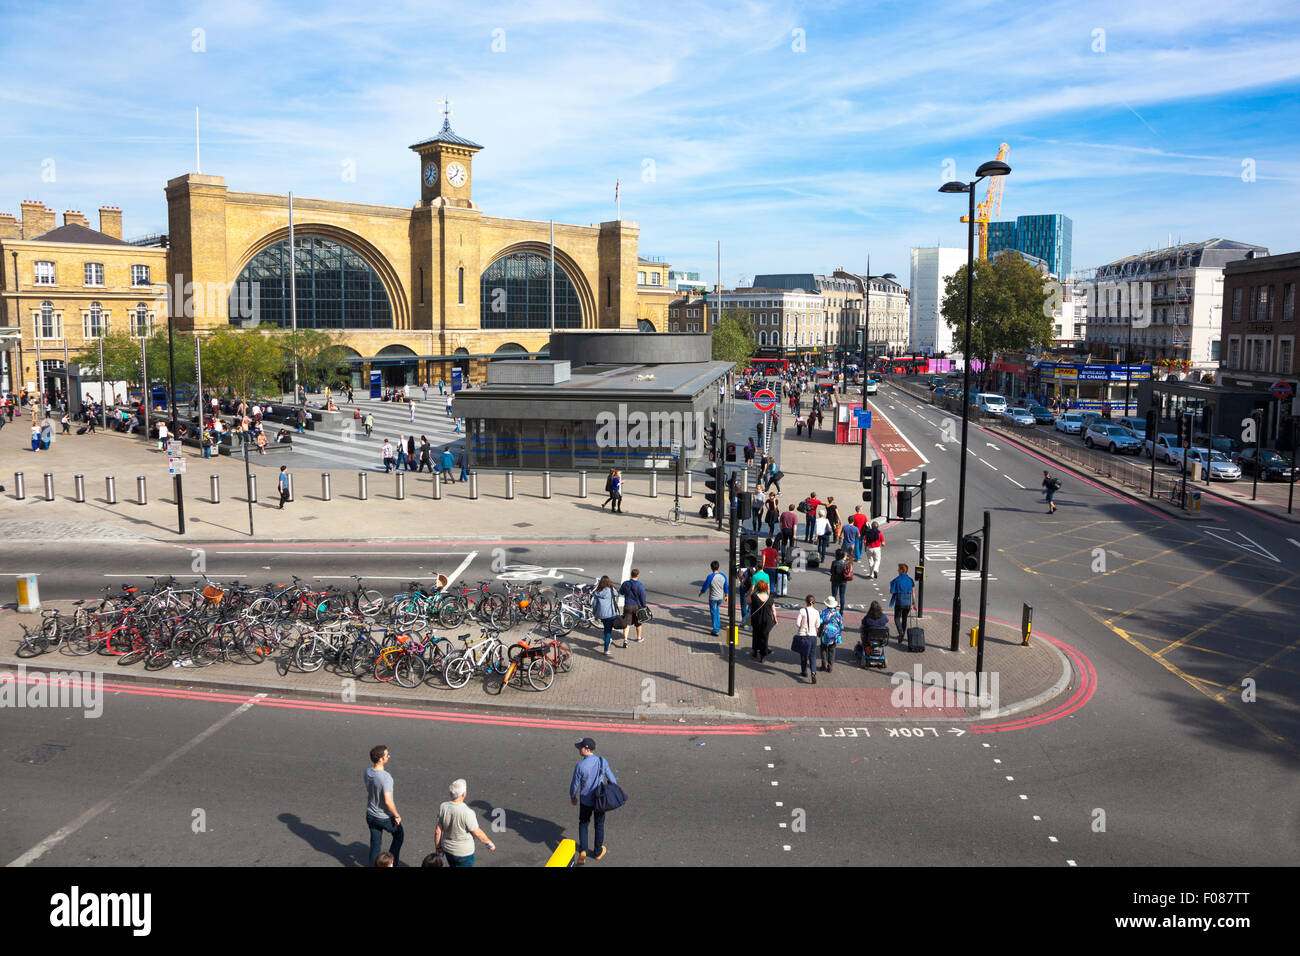 La gare de King's Cross et Euston Road London, UK Banque D'Images